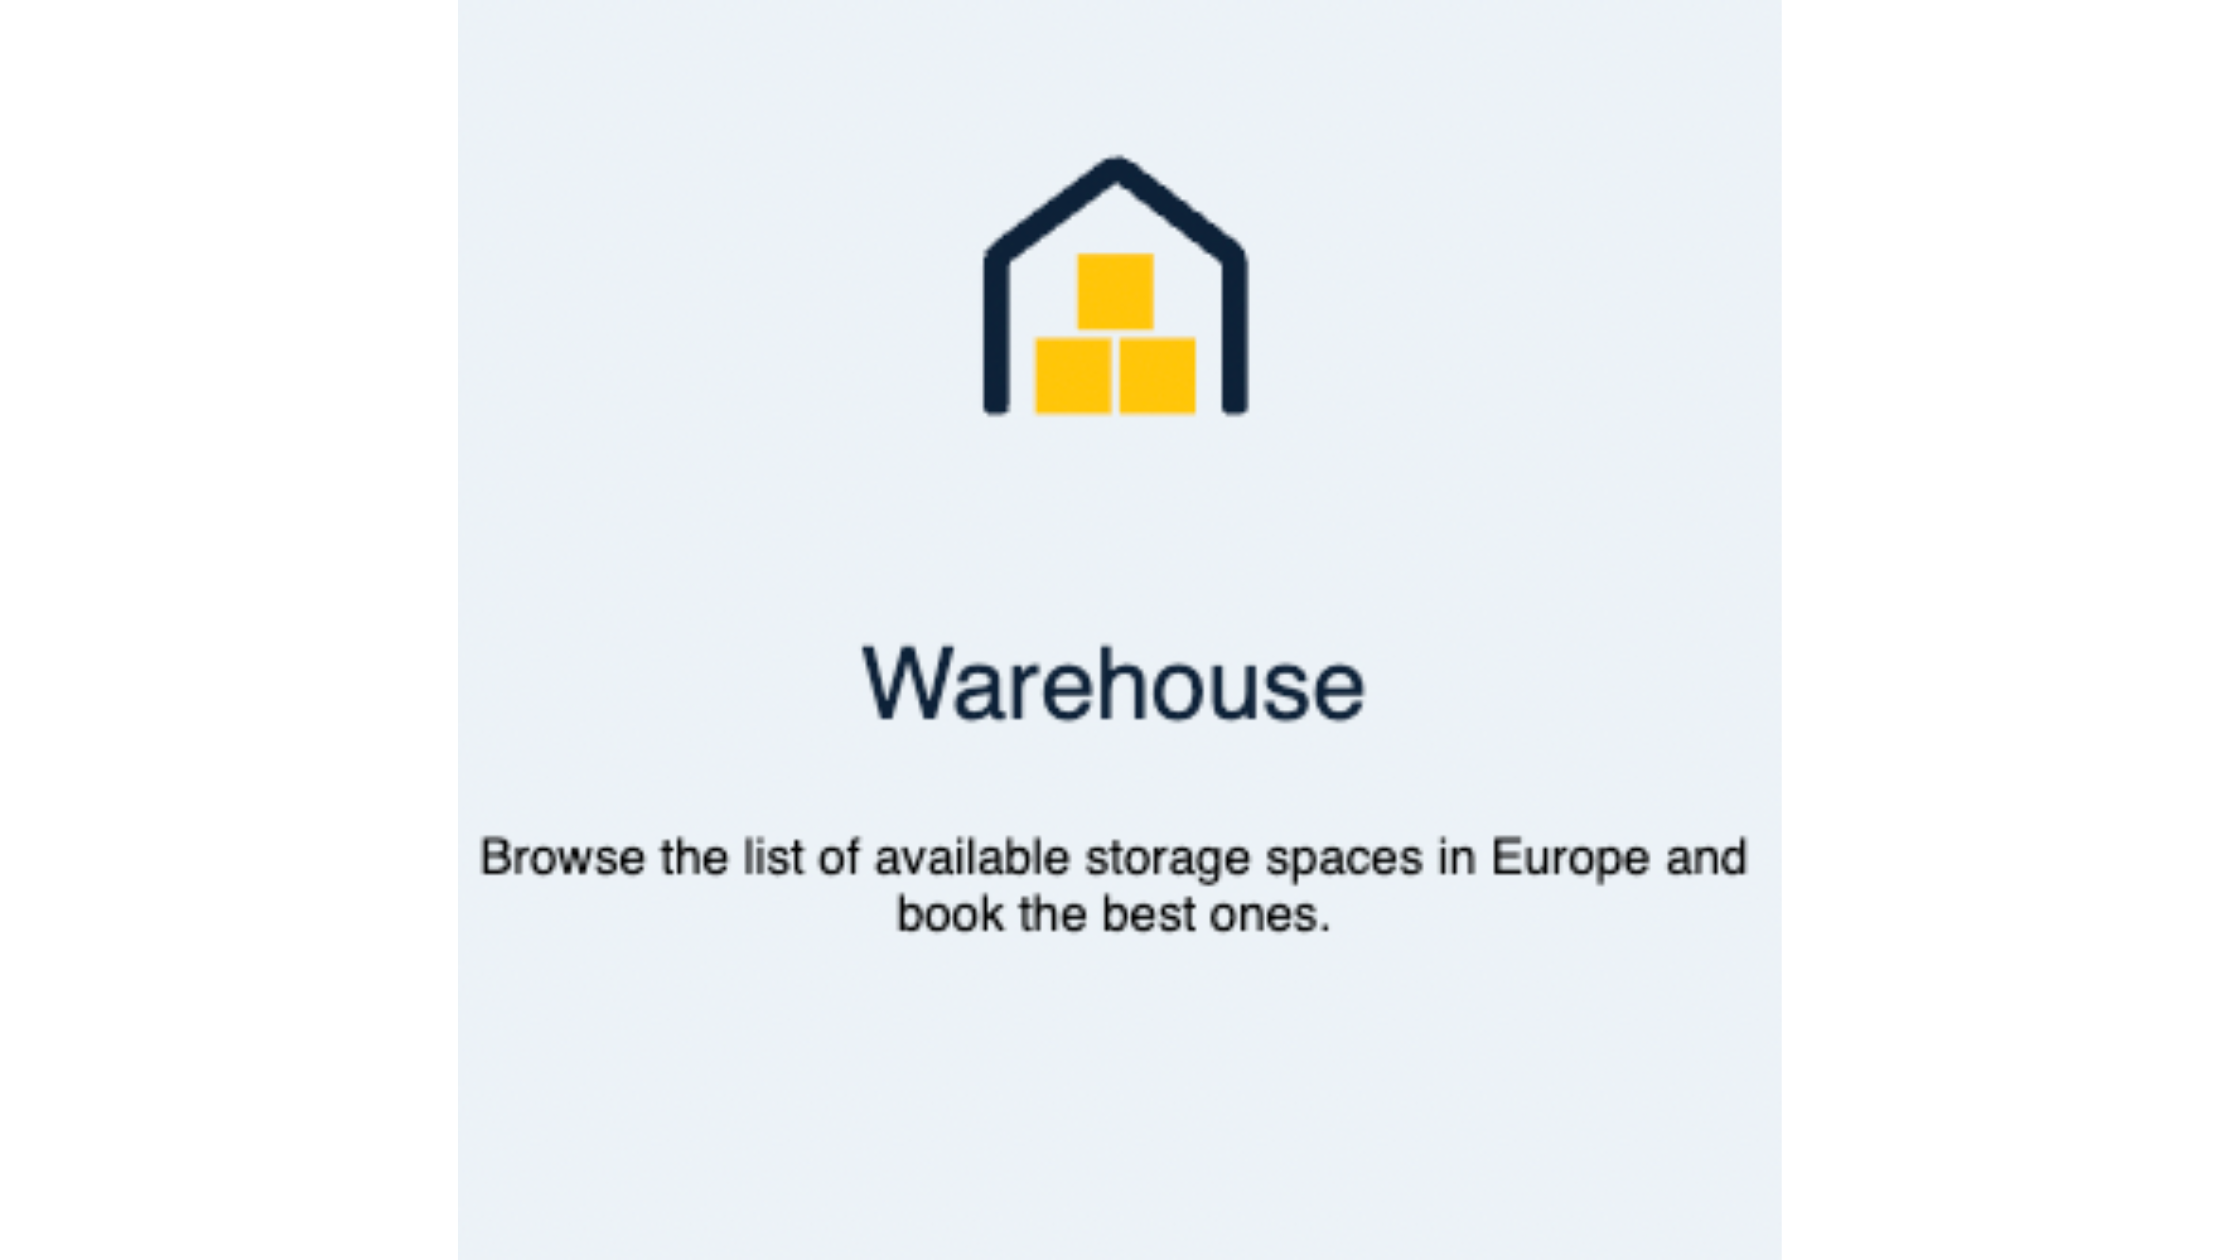 Find warehouse